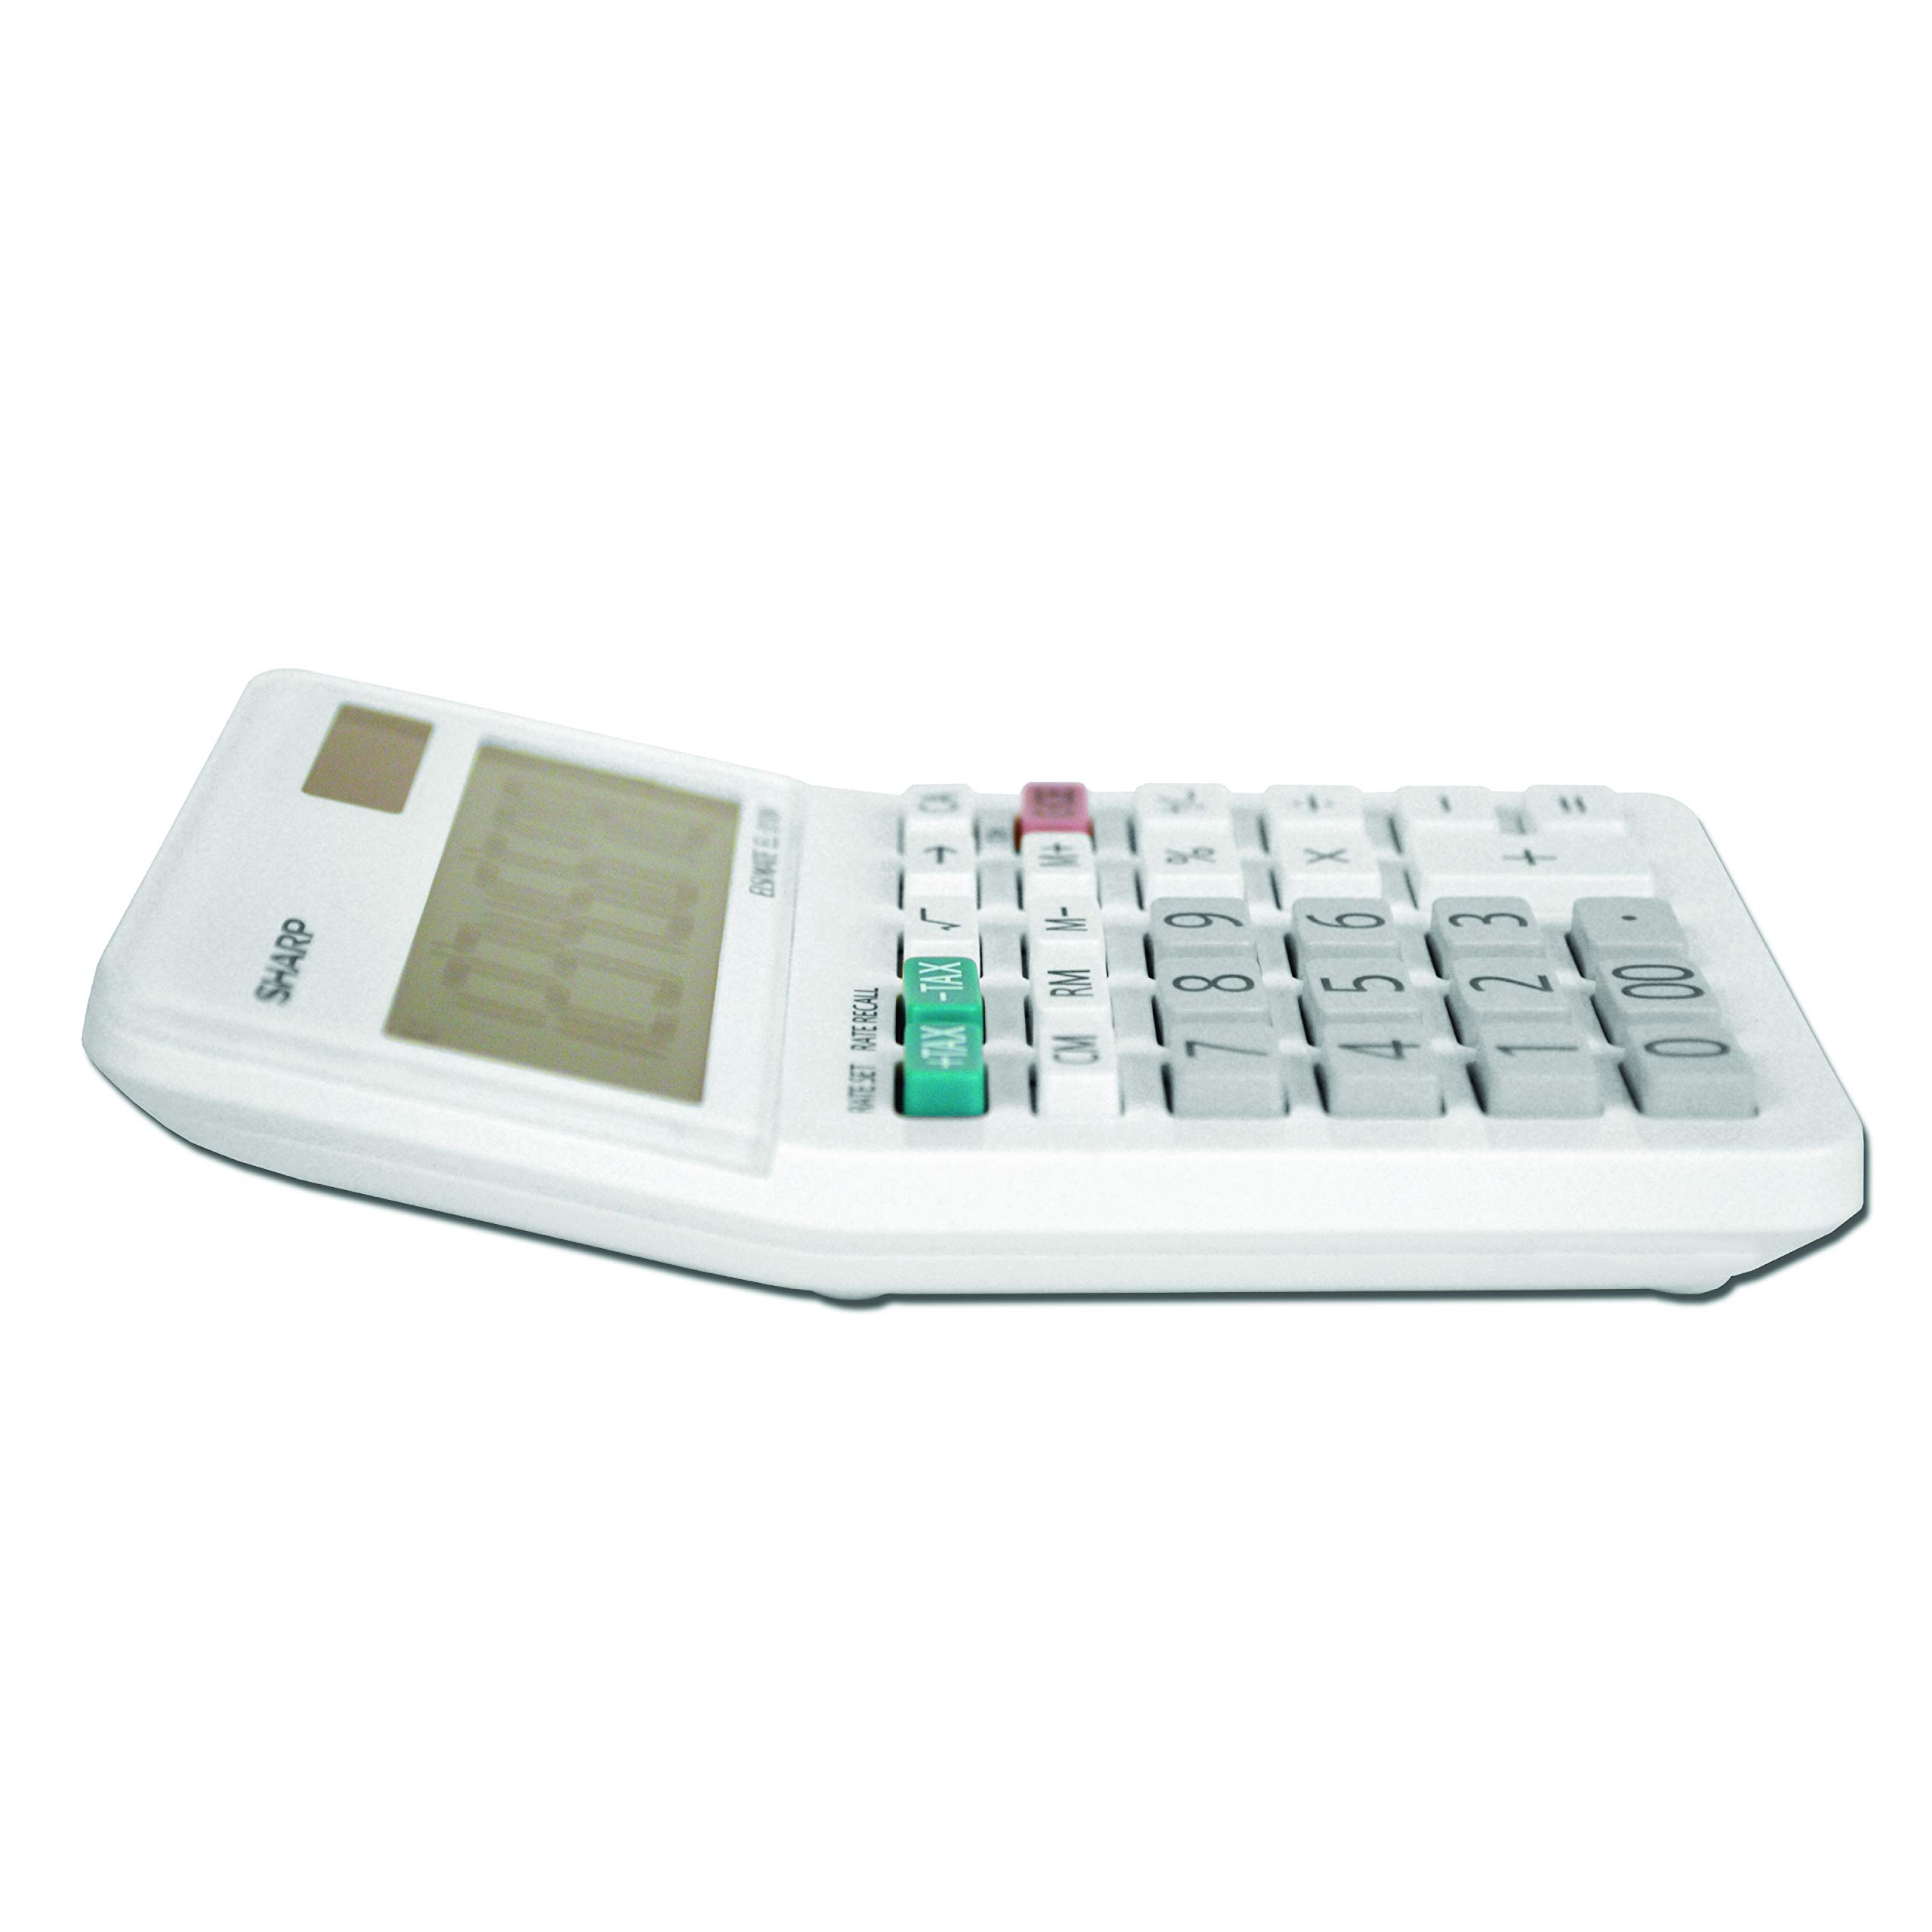 Sharp EL-310WB Calculator, White 3.125, 3.38 x 4.75 x 1.0 inches